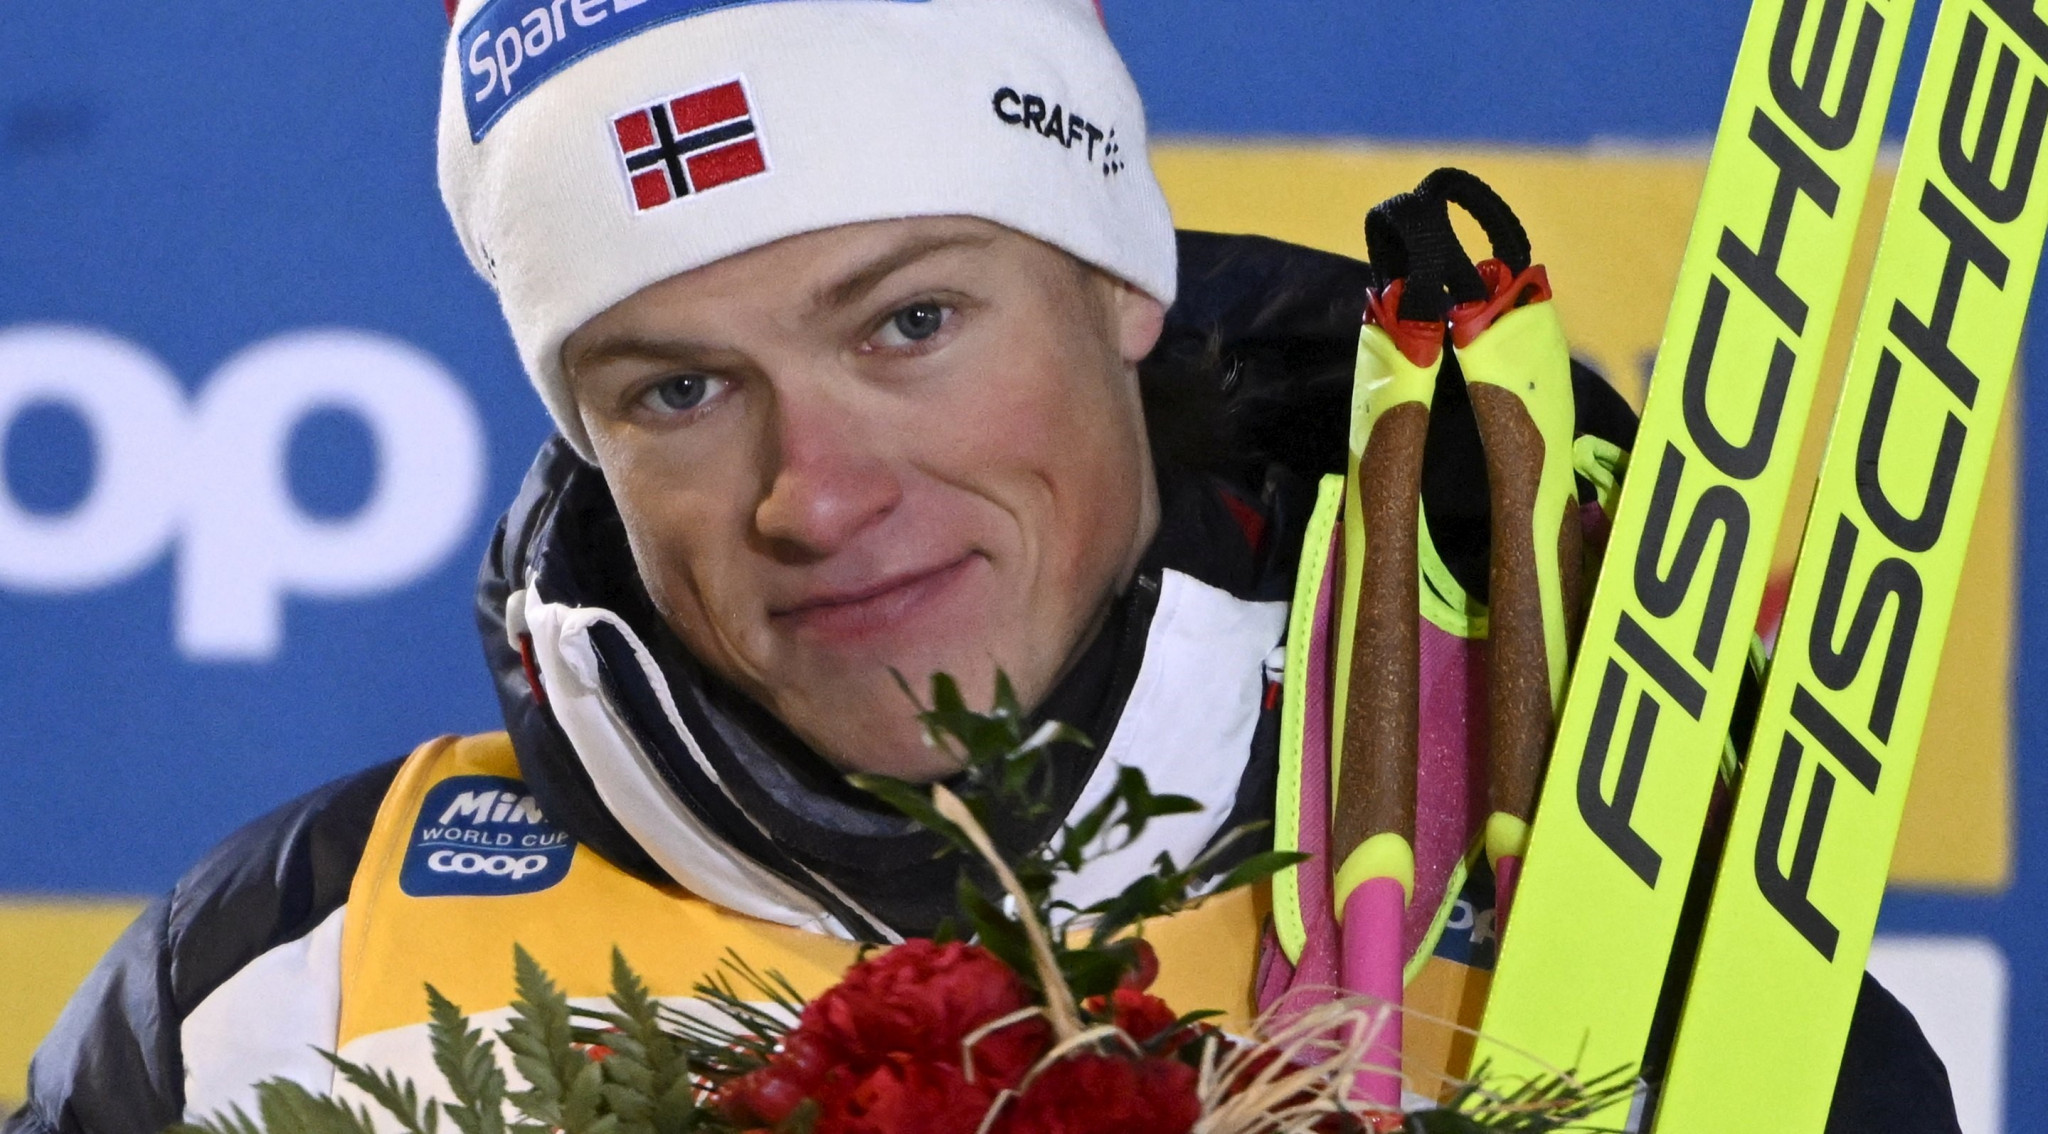 Johannes Høsflot Klæbo is yet to lose at this season's Tour de Ski ©Getty Images